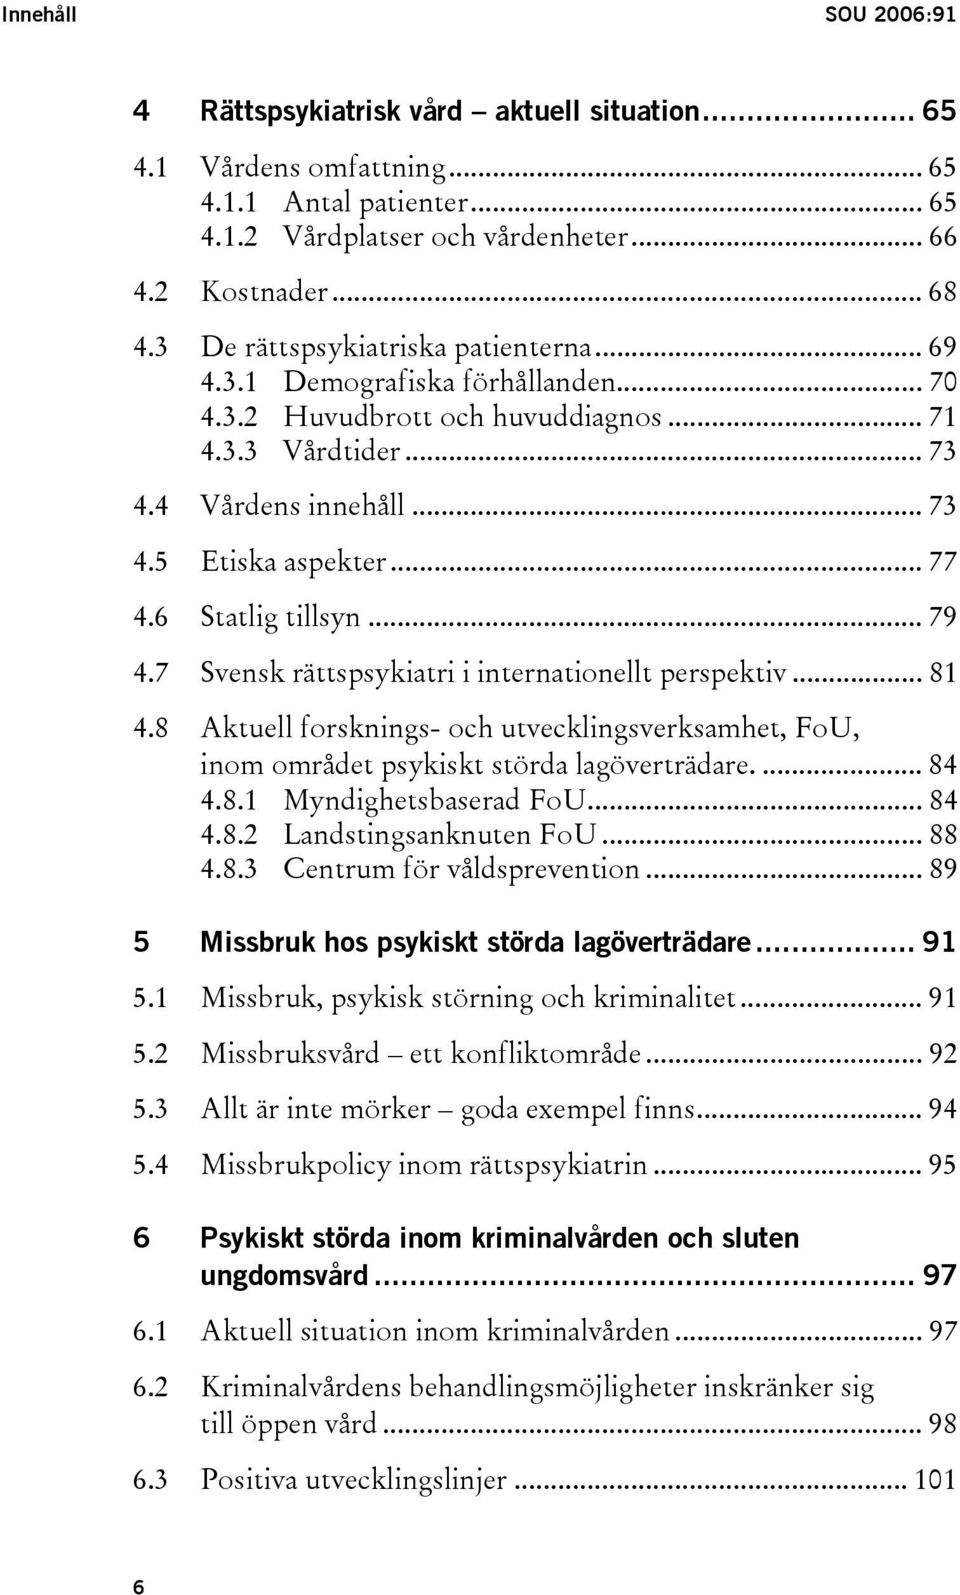 6 Statlig tillsyn... 79 4.7 Svensk rättspsykiatri i internationellt perspektiv... 81 4.8 Aktuell forsknings- och utvecklingsverksamhet, FoU, inom området psykiskt störda lagöverträdare.... 84 4.8.1 Myndighetsbaserad FoU.